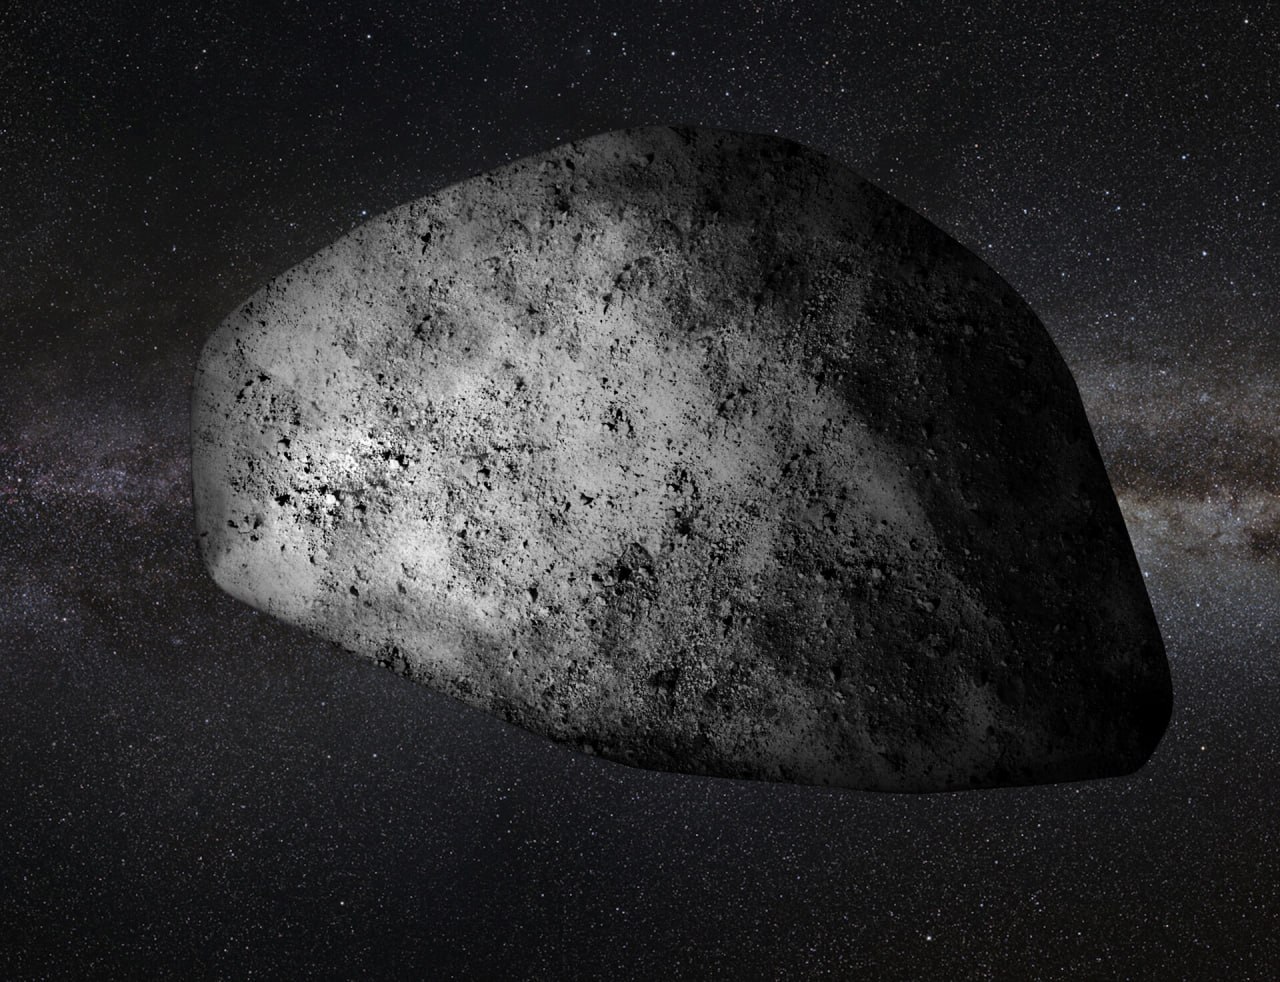 Земляне увидят астероид Апофис невооруженным взглядом 13 апреля 2029 года